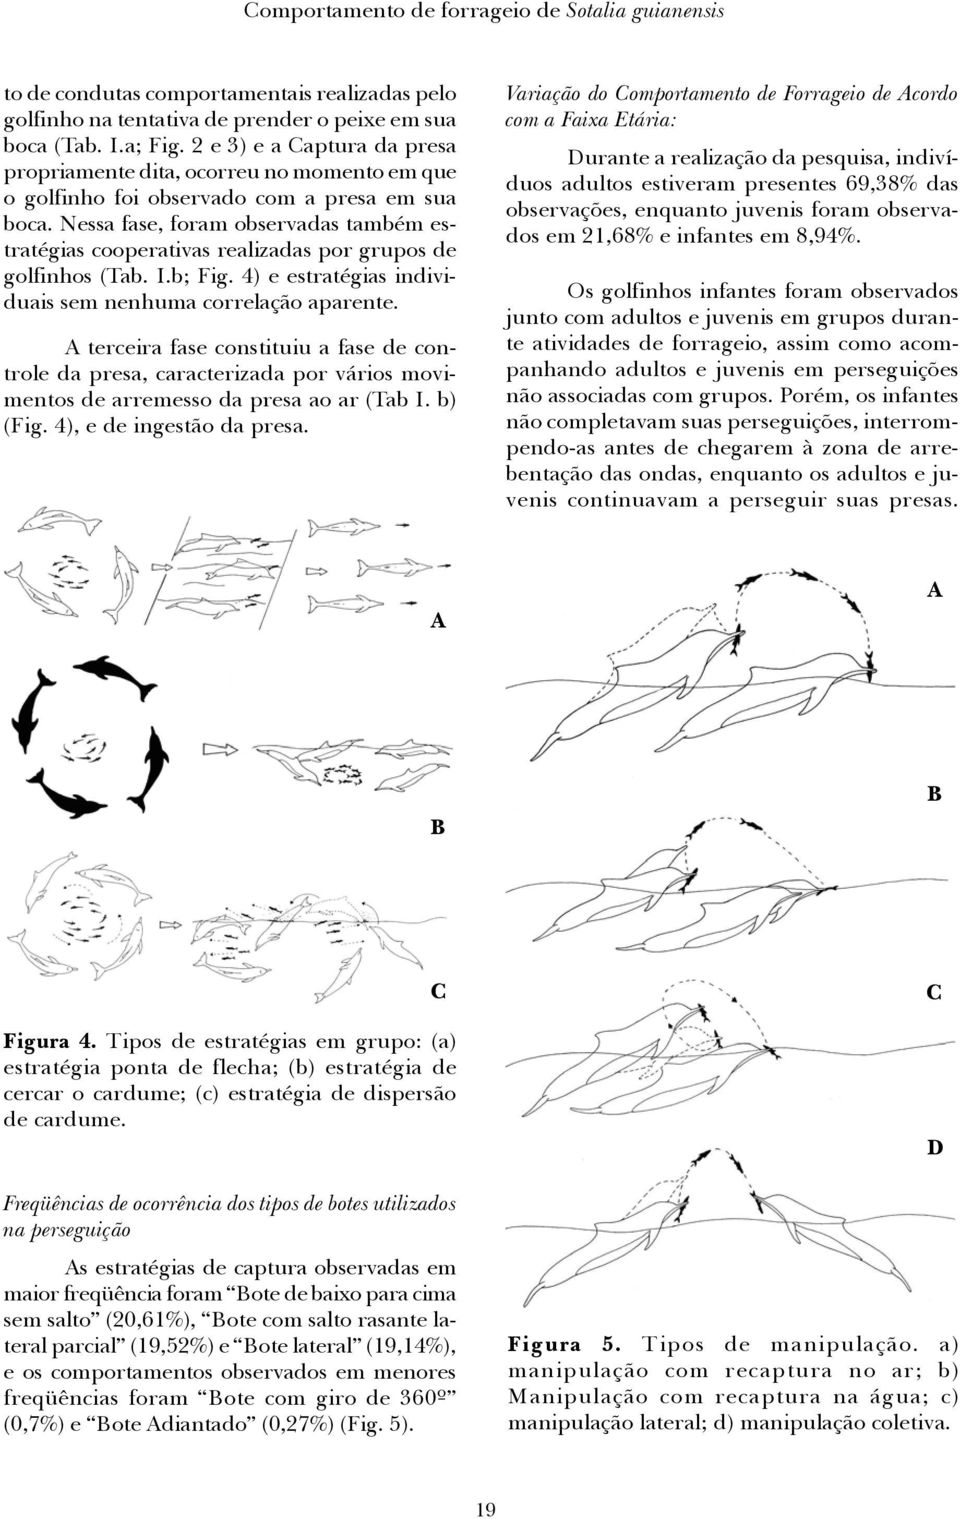 Nessa fase, foram observadas também estratégias cooperativas realizadas por grupos de golfinhos (Tab. I.b; Fig. 4) e estratégias individuais sem nenhuma correlação aparente.